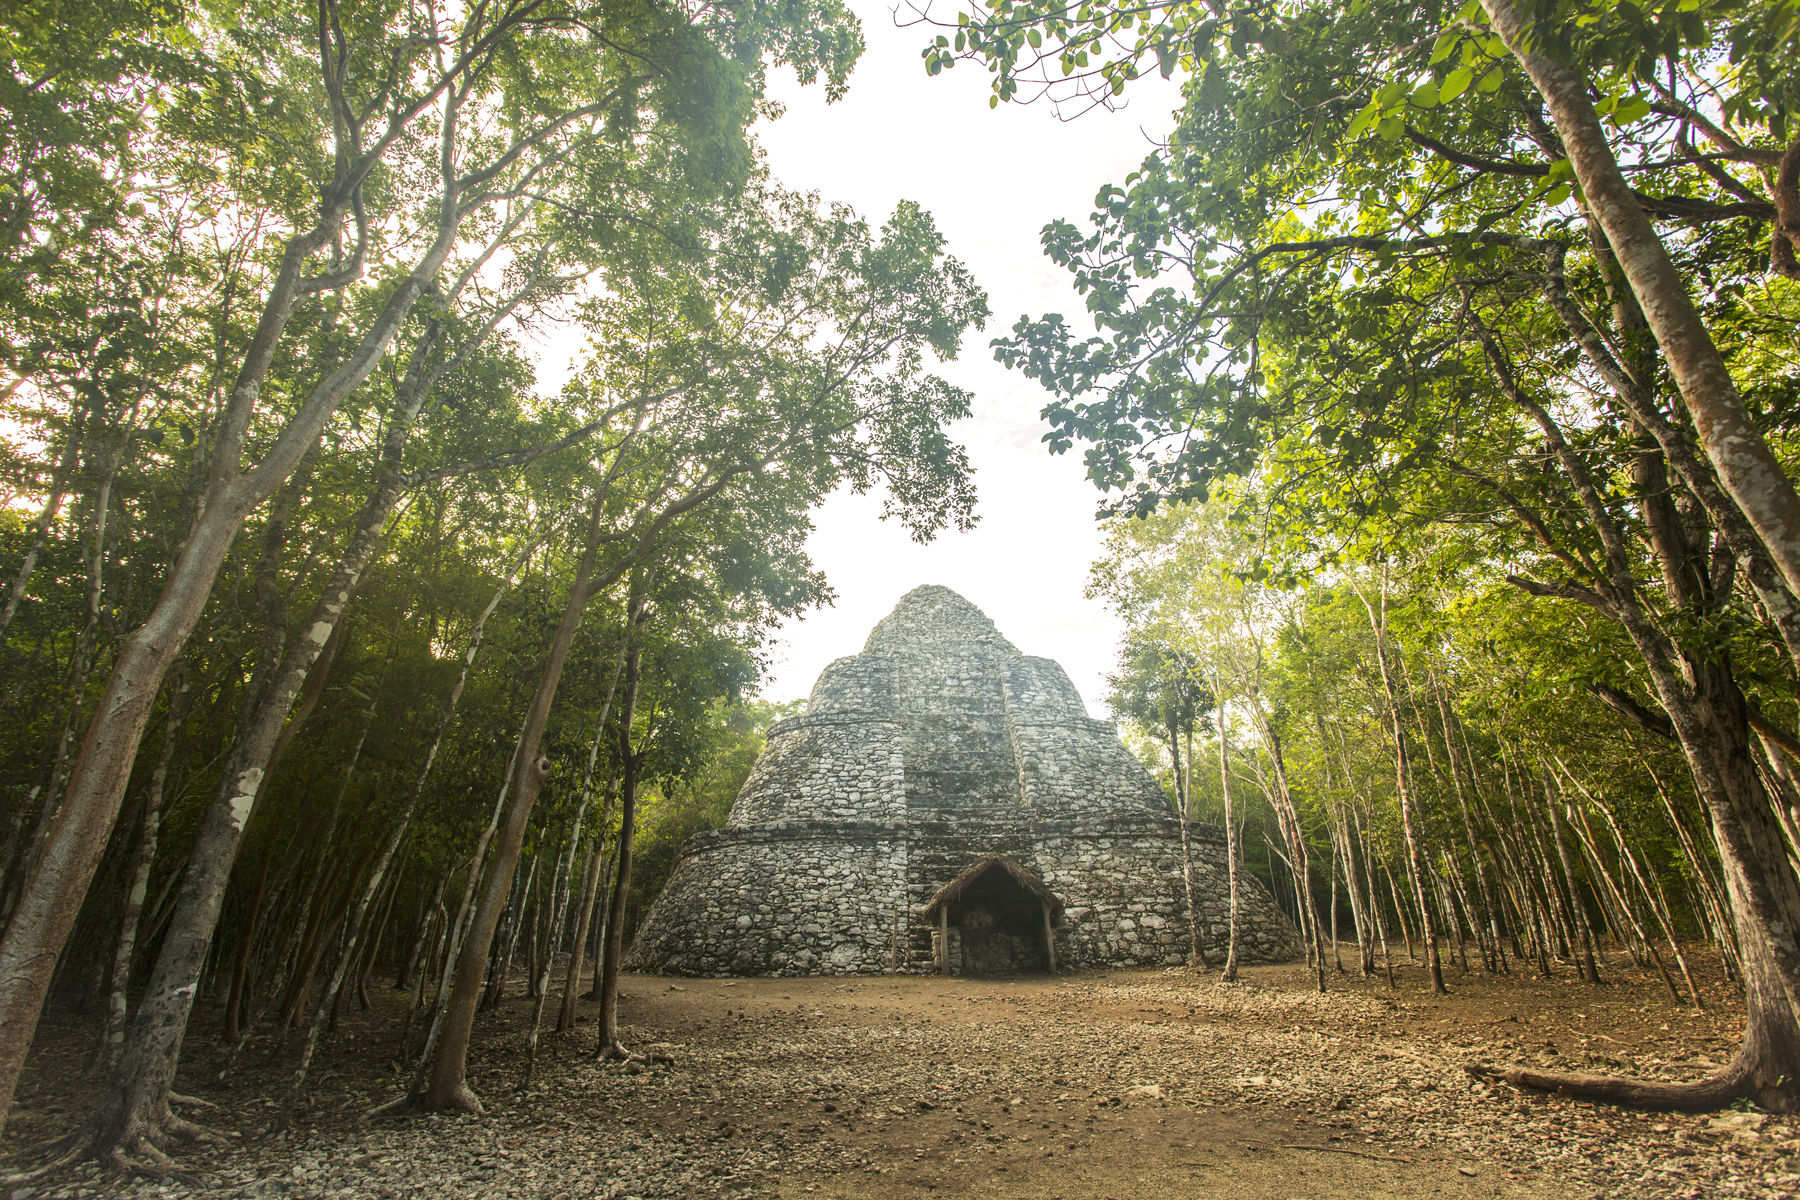 Mayan ruins in Coba